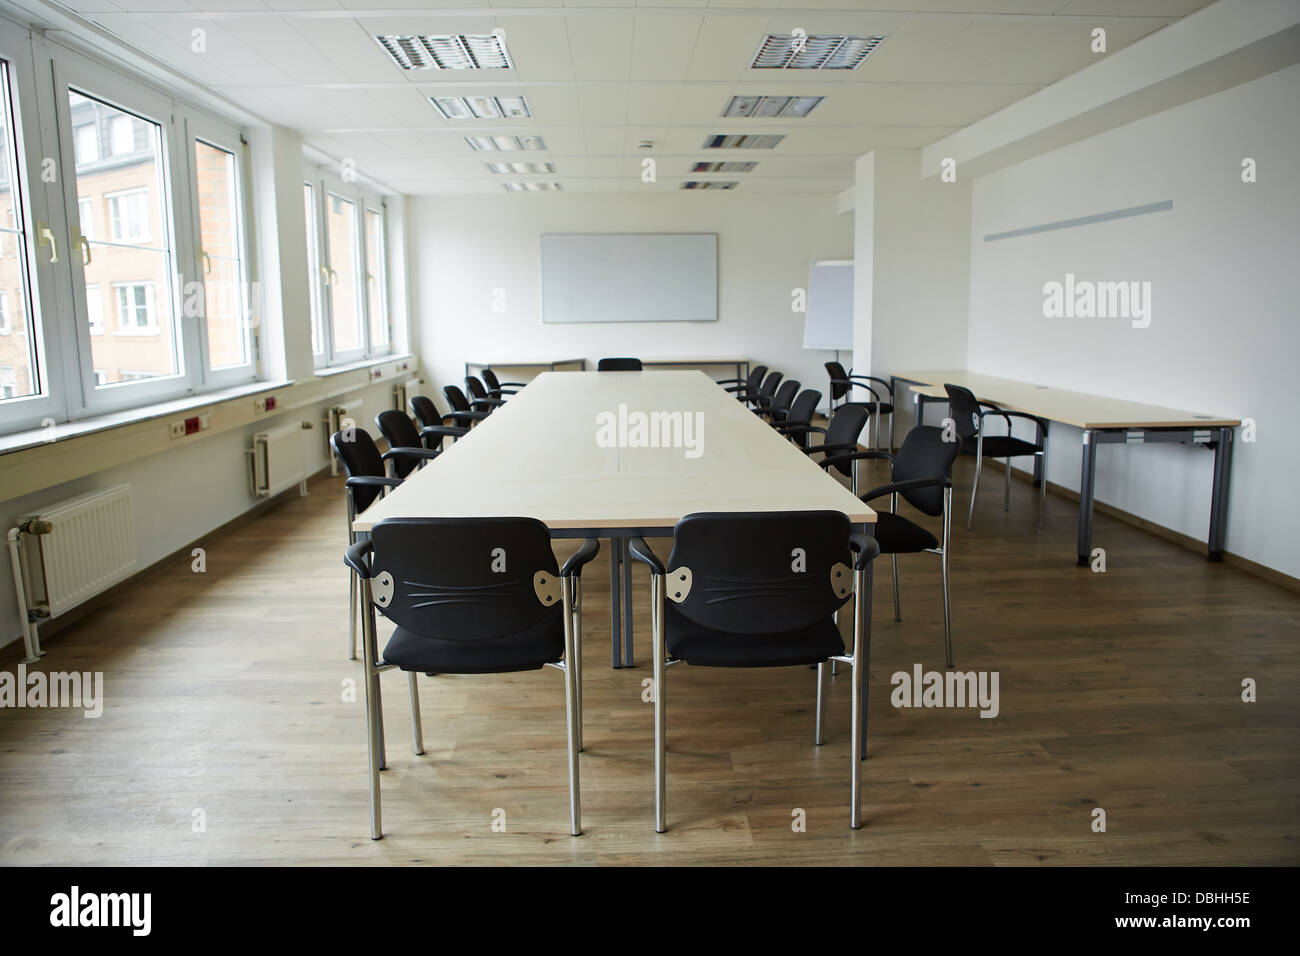 Table De Conférenciers En Classe Avec Visualiseur Et Microphone Photo stock  - Image du huître, oeuf: 159986134